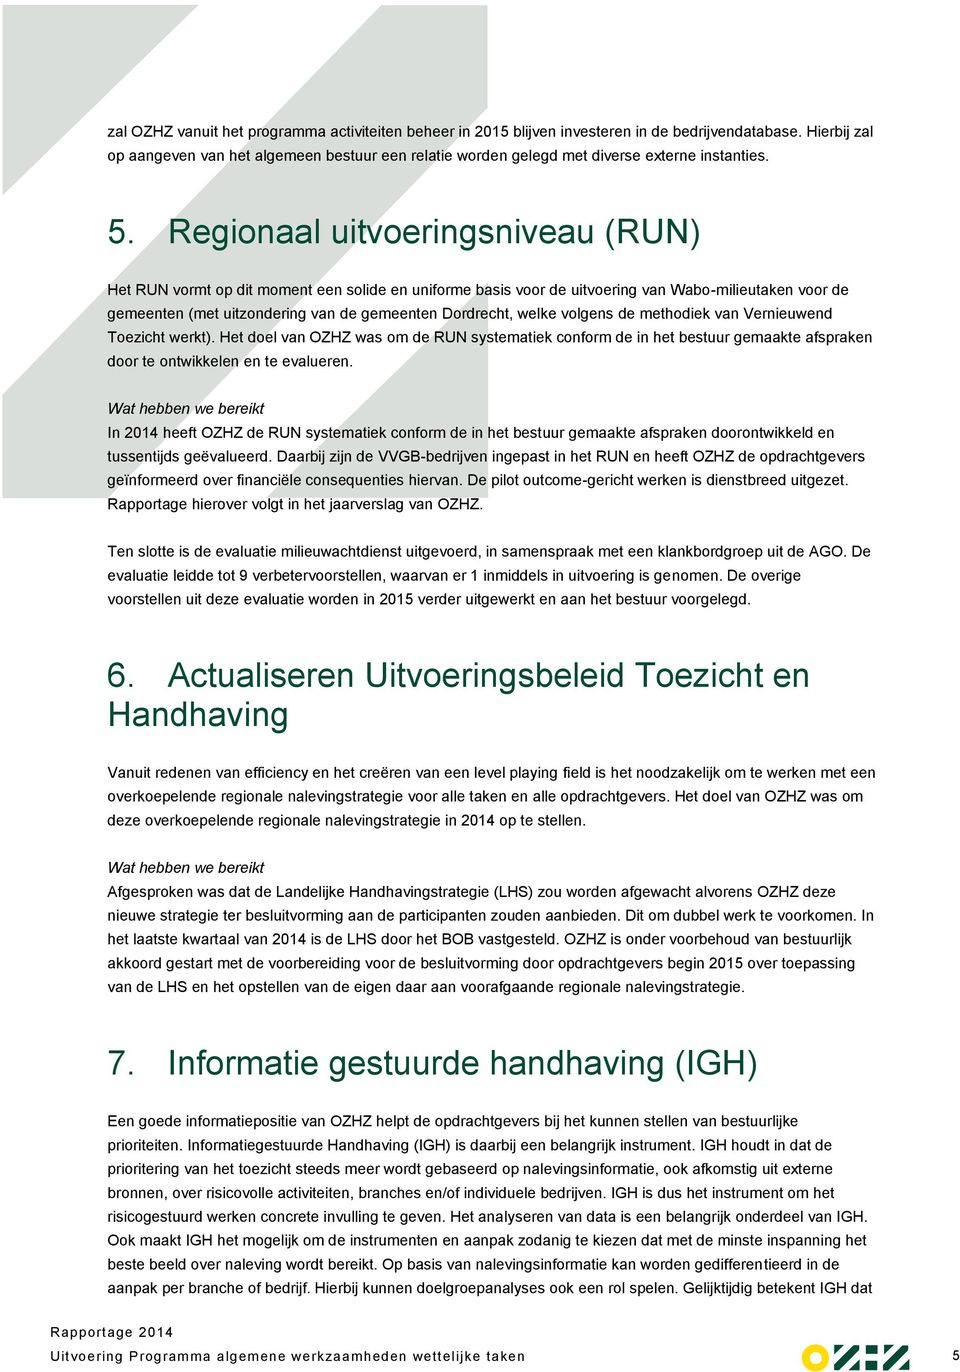 Regionaal uitvoeringsniveau (RUN) Het RUN vormt op dit moment een solide en uniforme basis voor de uitvoering van Wabo-milieutaken voor de gemeenten (met uitzondering van de gemeenten Dordrecht,